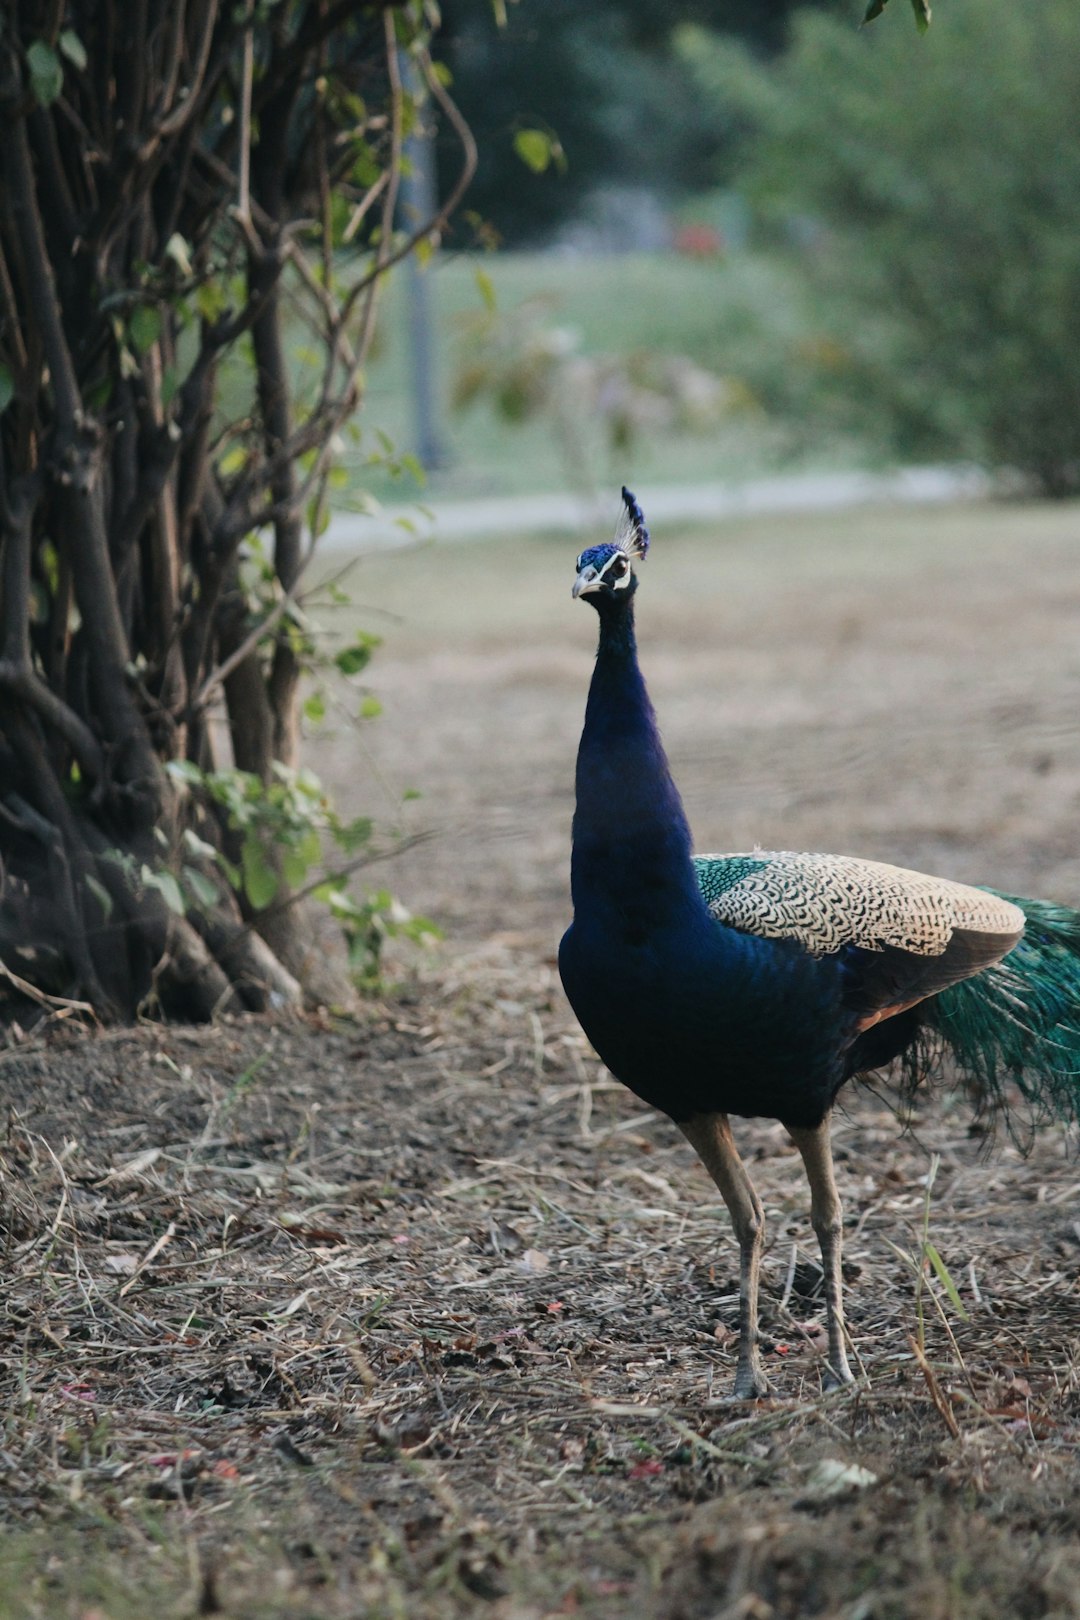 blue peacock walking on brown soil during daytime